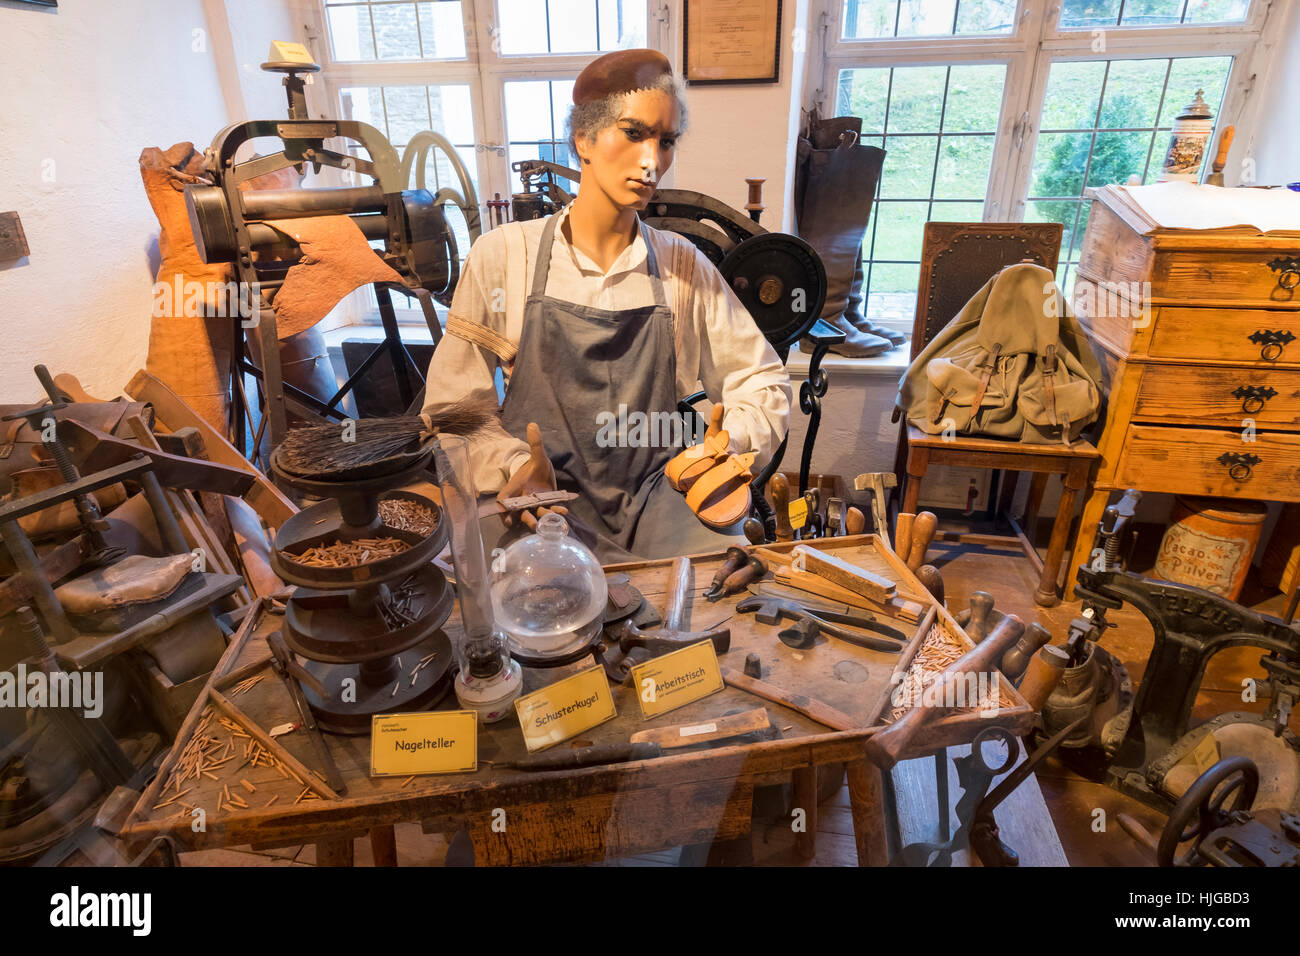 Shoemaker's workshop, Schwäbisches Handwerkermuseum, Lower Fountain Master House, Augsburg, Swabia, Bavaria, Germany Stock Photo